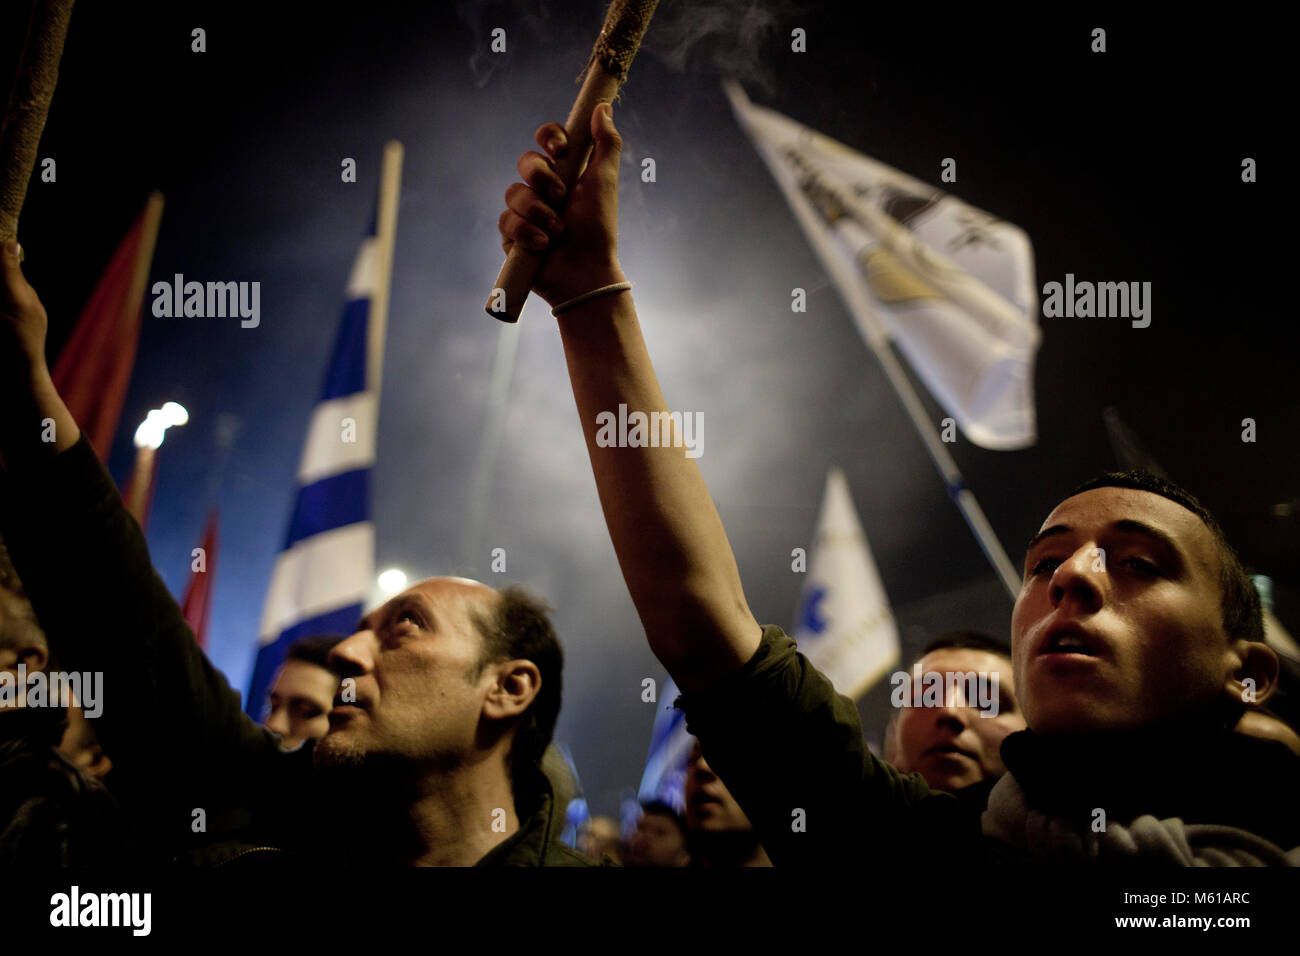 Griechenland: Golden Dawn - 02/02/2013 - Griechenland/Athen - ganz rechts extreme nationalistische Partei Golden Dawn eine Veranstaltung organisiert, um den Tod von drei griechischen Soldaten während der imia Krise im Jahr 1996 zu gedenken. Athen, 2. Februar 2013 - Stefania Mizara/Le Pictorium Stockfoto